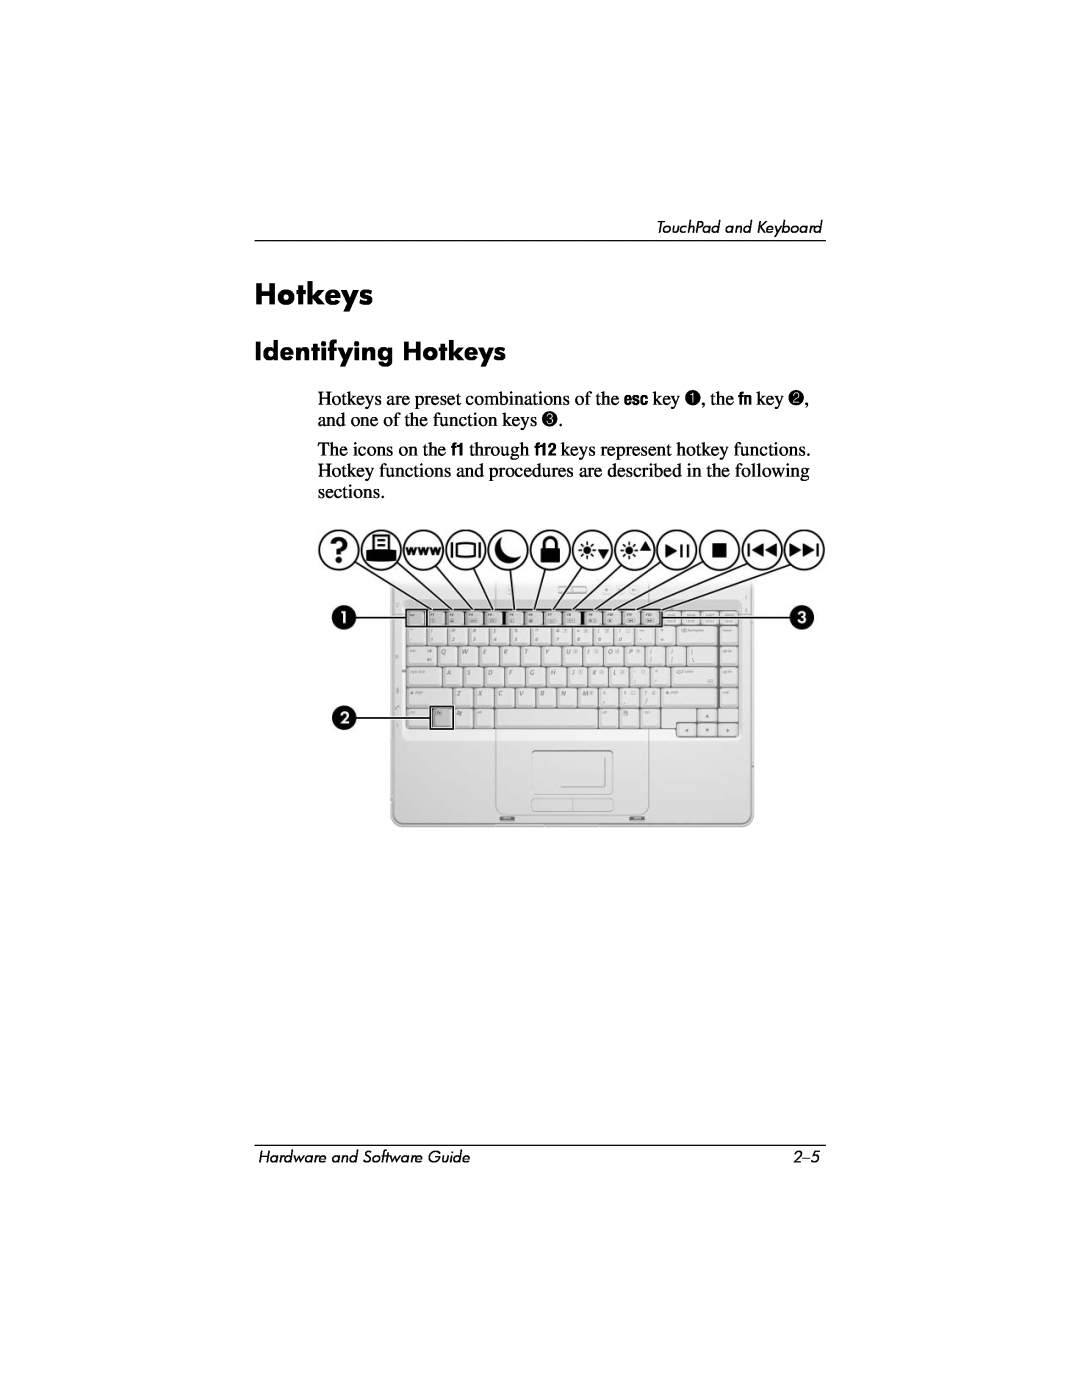 Compaq Presario M2000 manual Identifying Hotkeys 